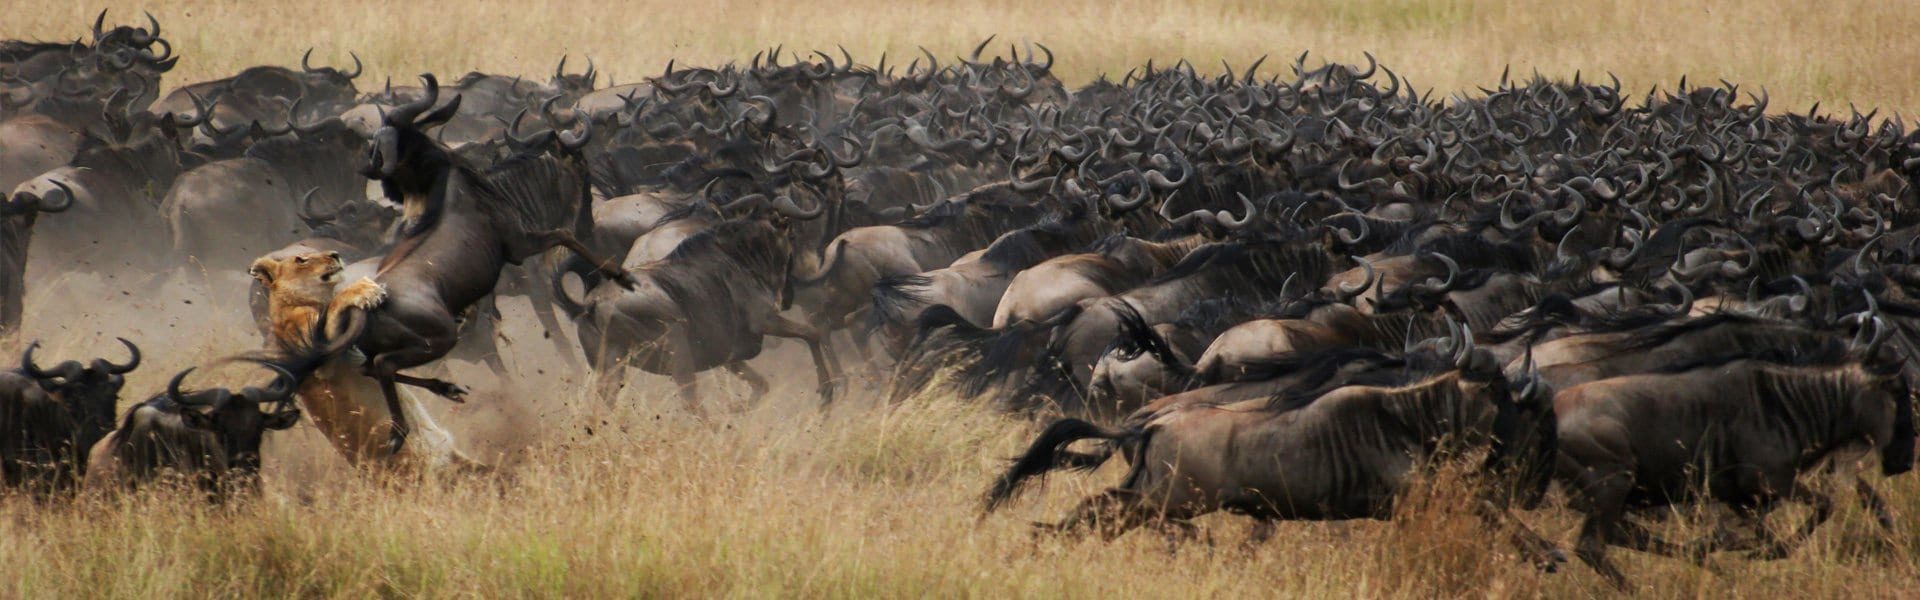 6 Days Wildebeest Migration Safari